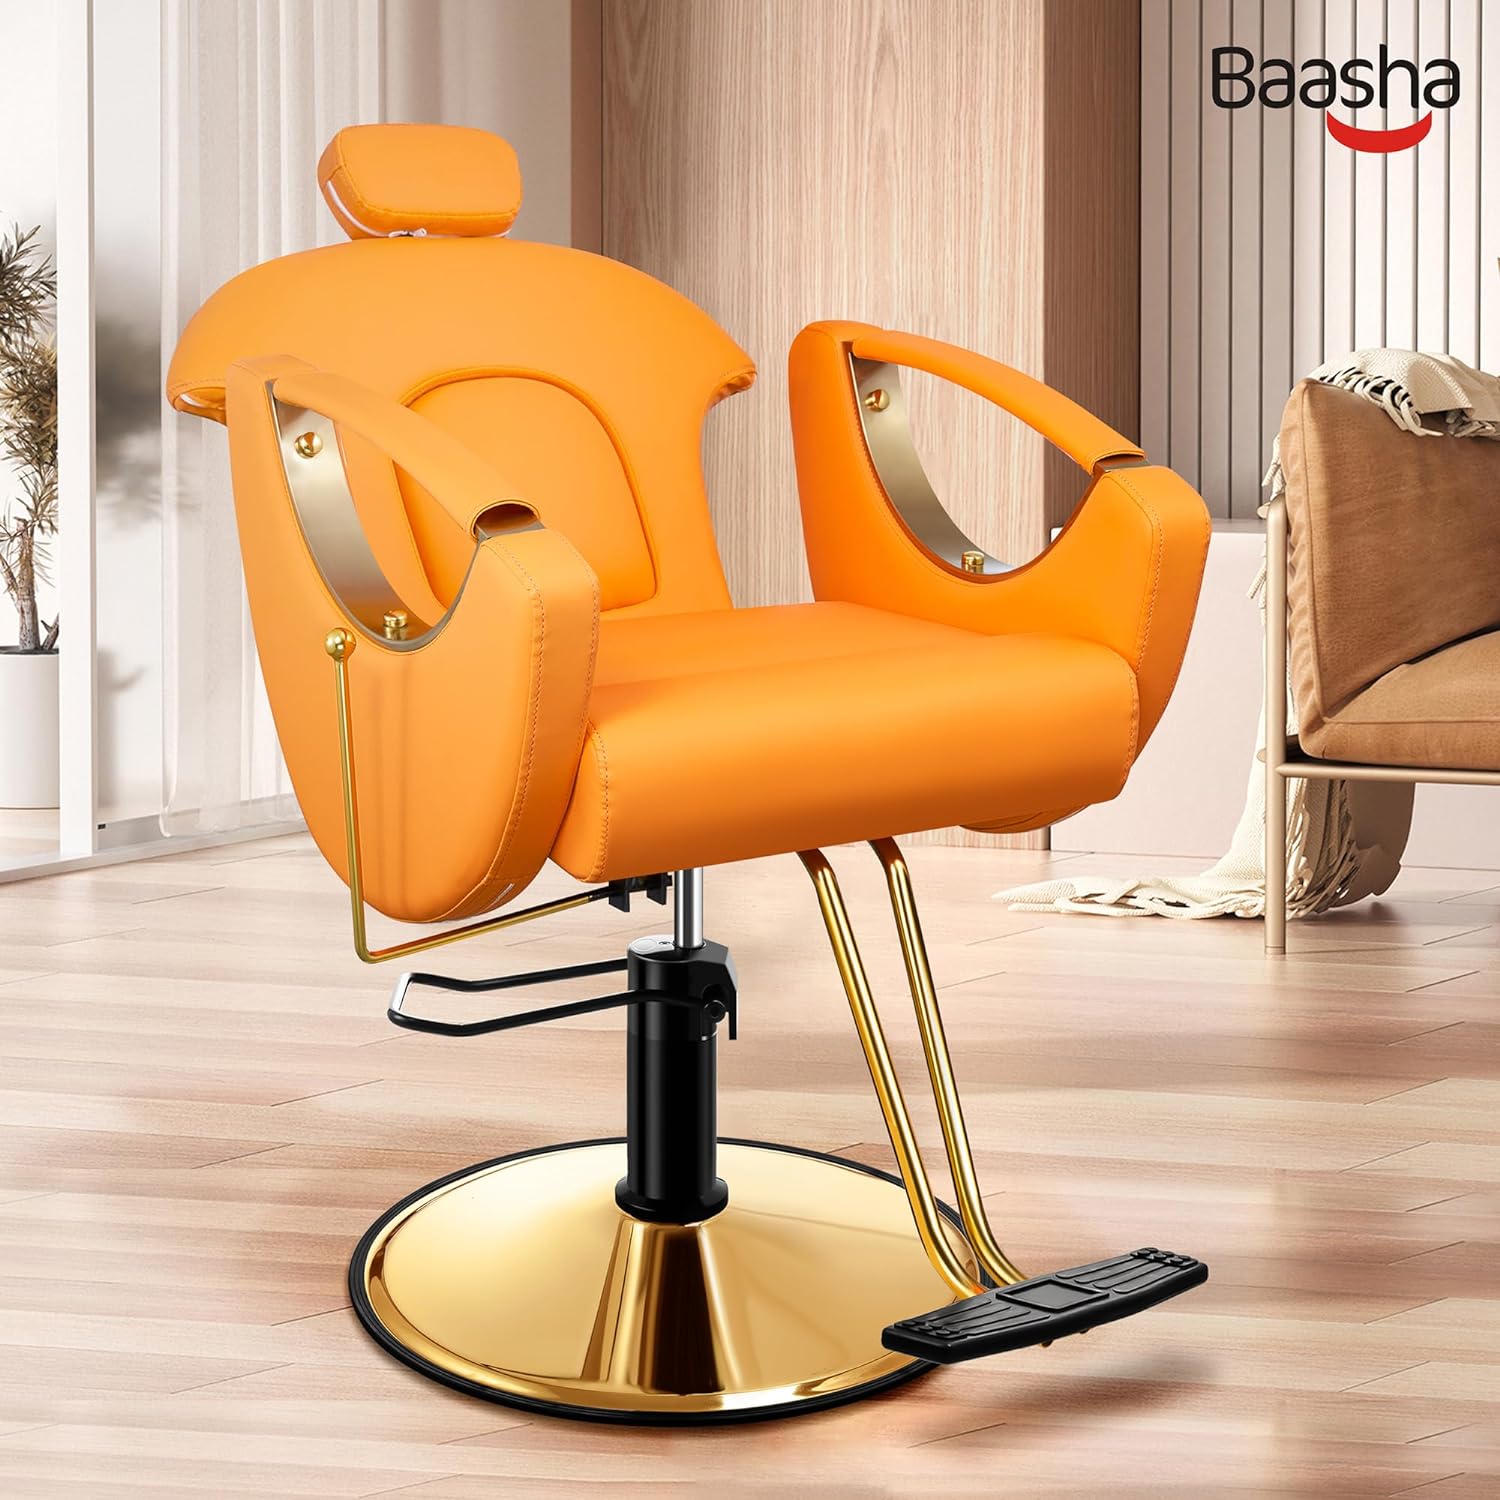 Silla de peluquería reclinable, silla de salón dorada multiusos